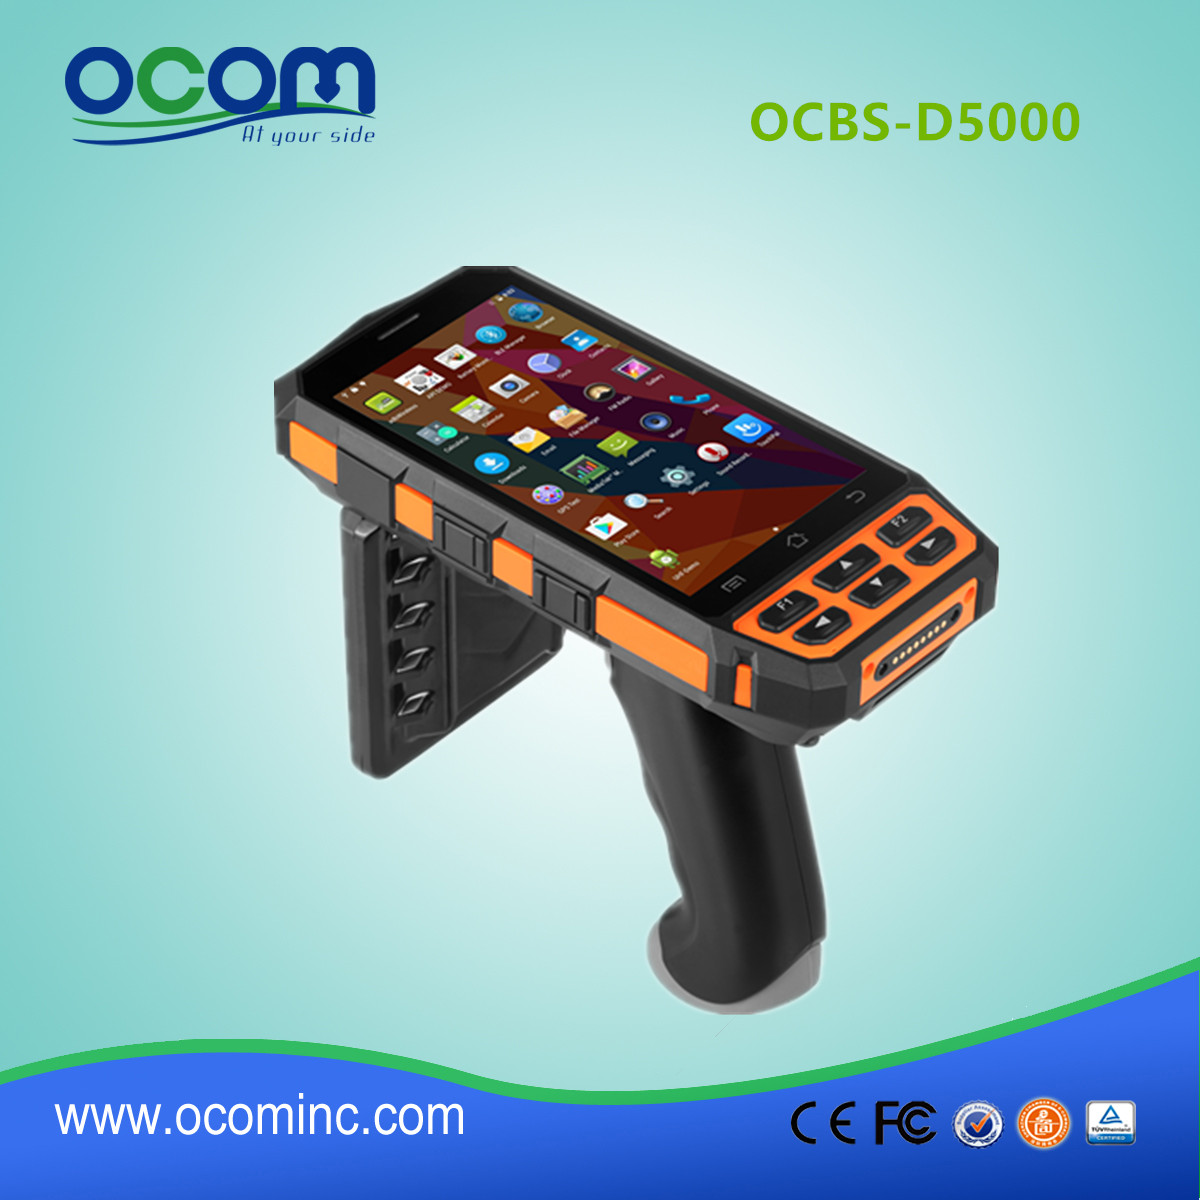 Terminale portatile industriale Android nuovo modello OCBS-D5000